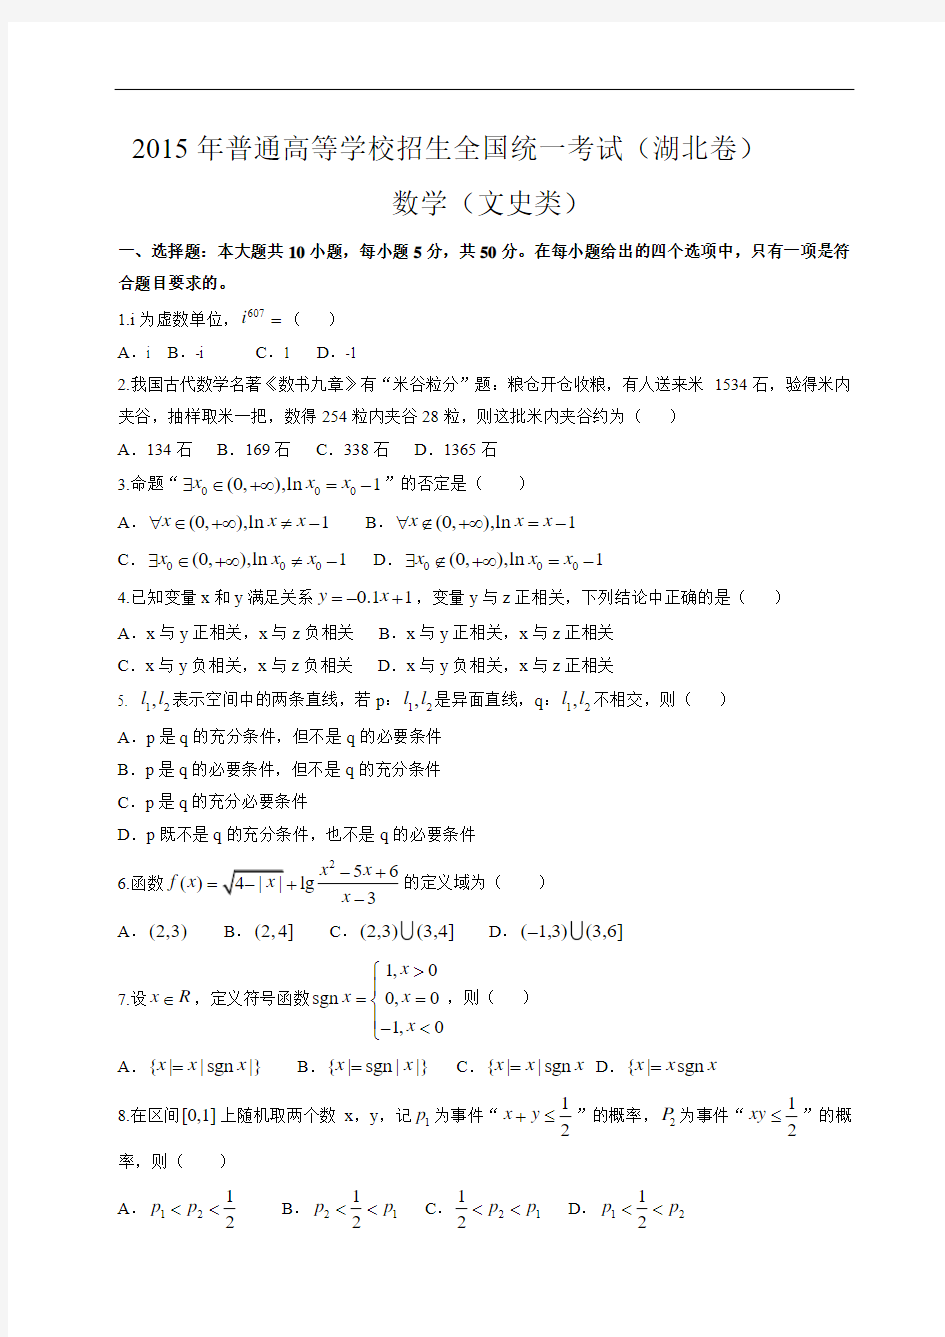 2015湖北省高考试卷(文科数学)(精校word版有答案)